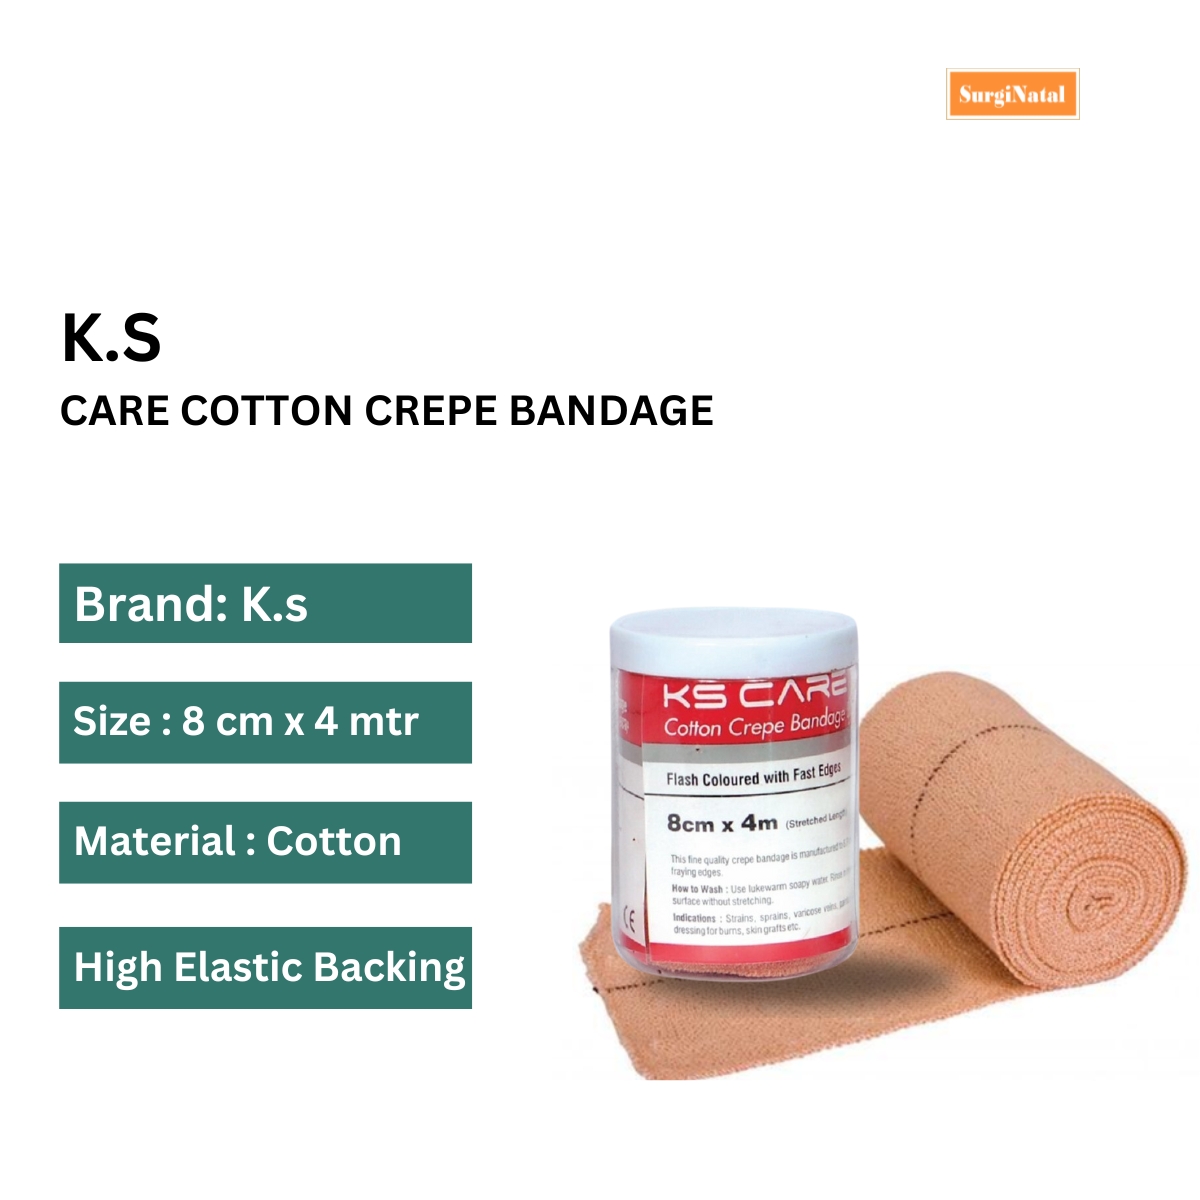 k. s. care cotton crepe bandage 8 cm x 4 mtr